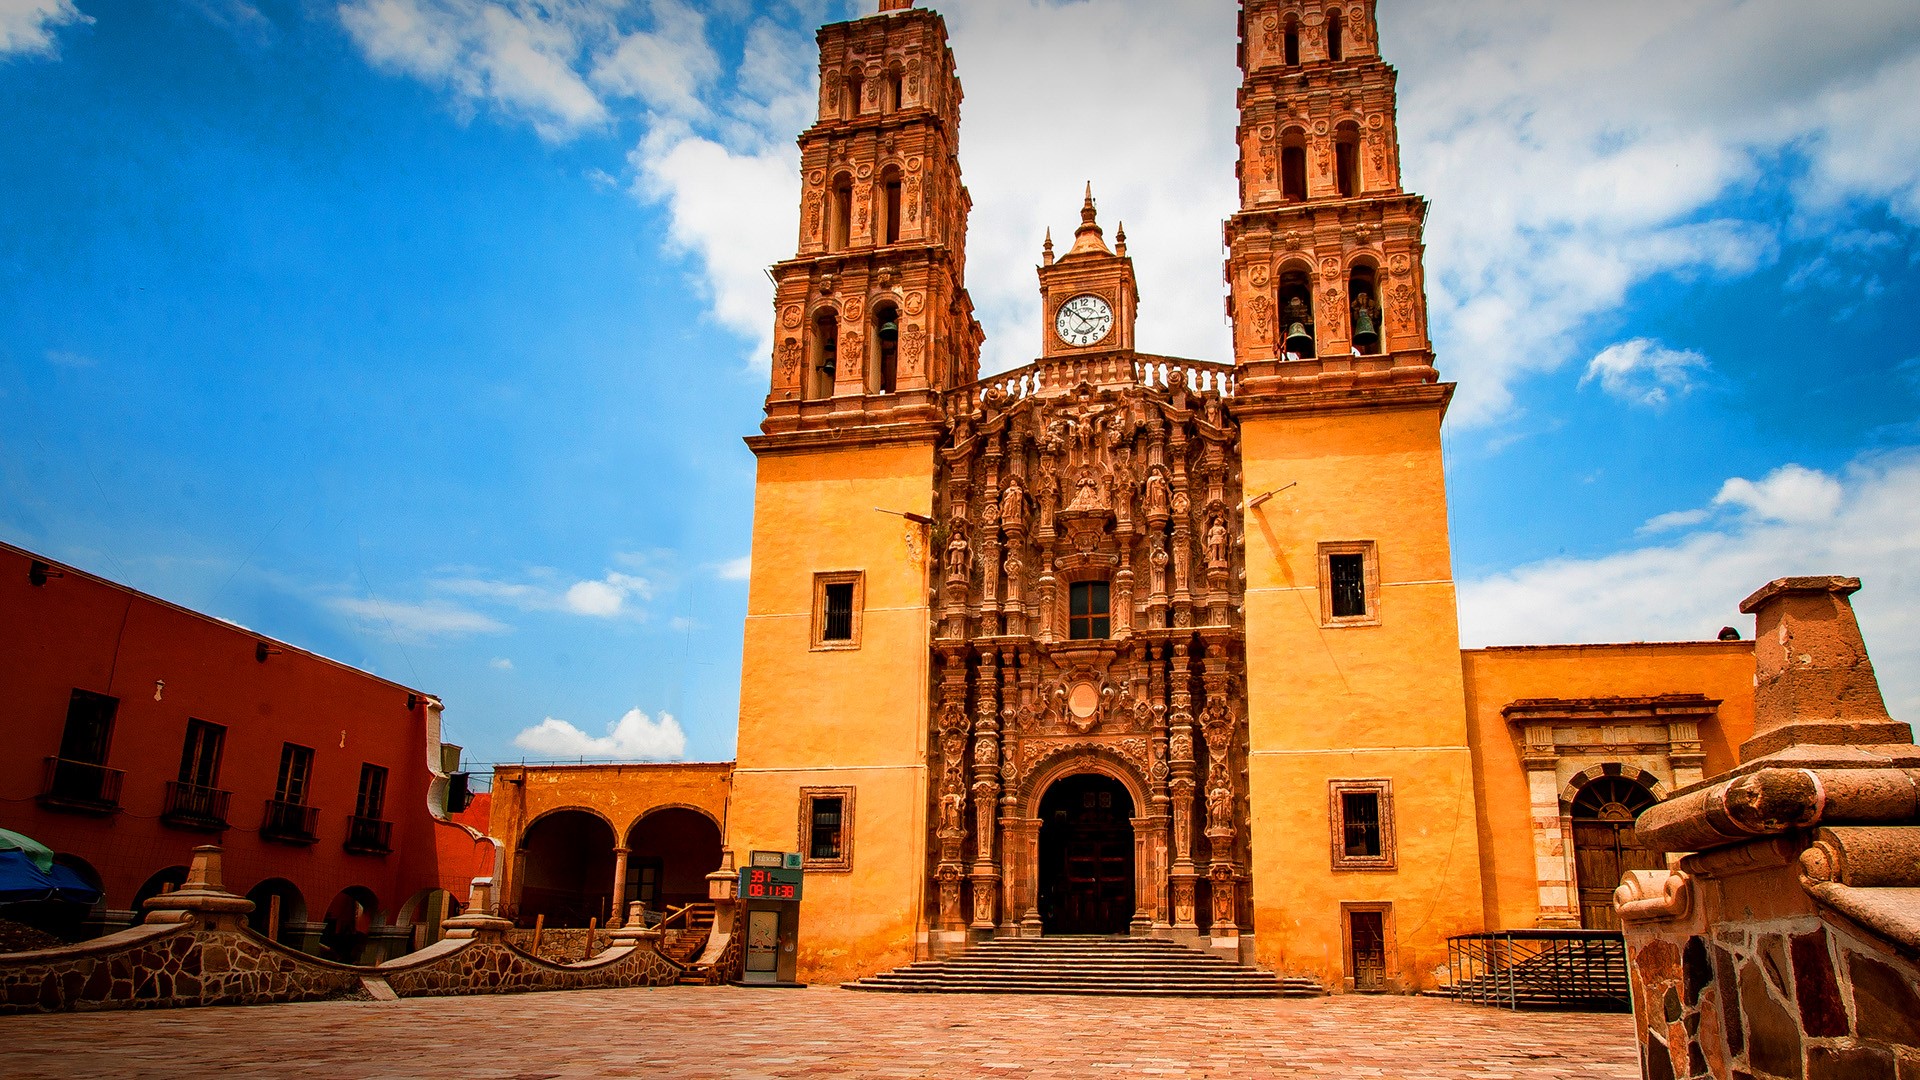 Cathedral Parroquia de Nuestra Señora de Dolores, Dolores Hidalgo,  Guanajuato, Mexico | Windows 10 Spotlight Images